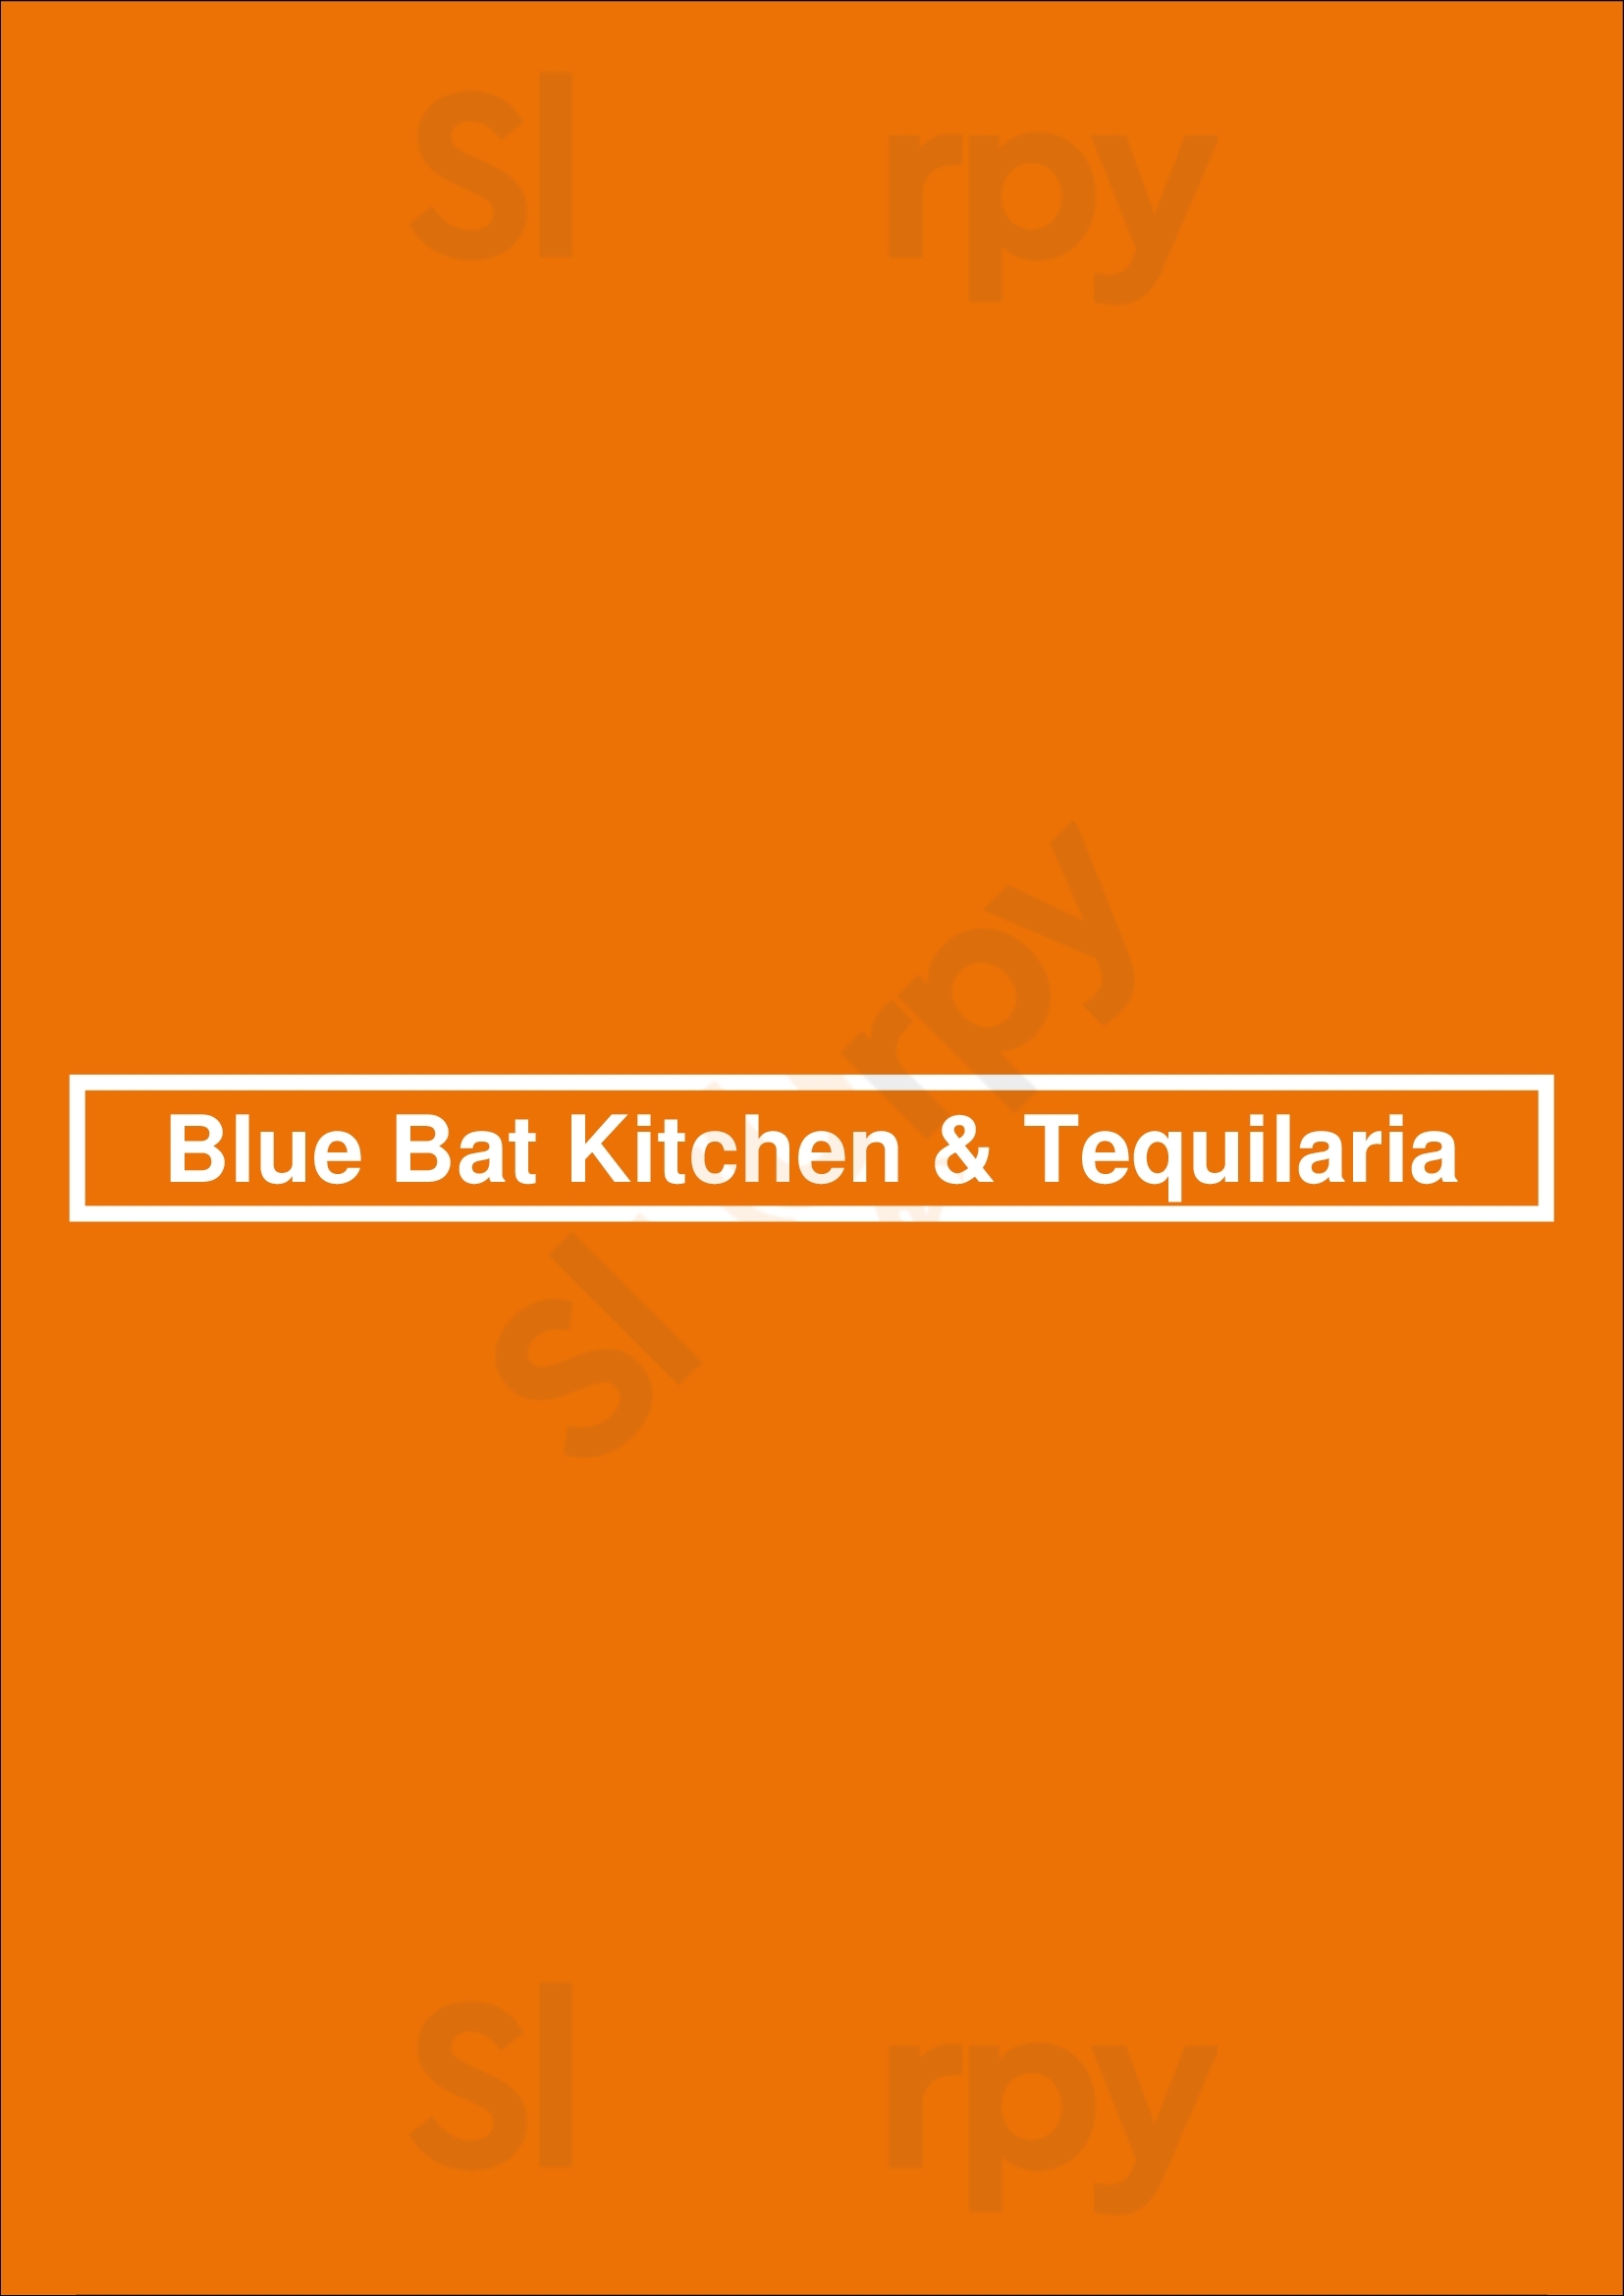 Blue Bat Kitchen & Tequilaria Milwaukee Menu - 1